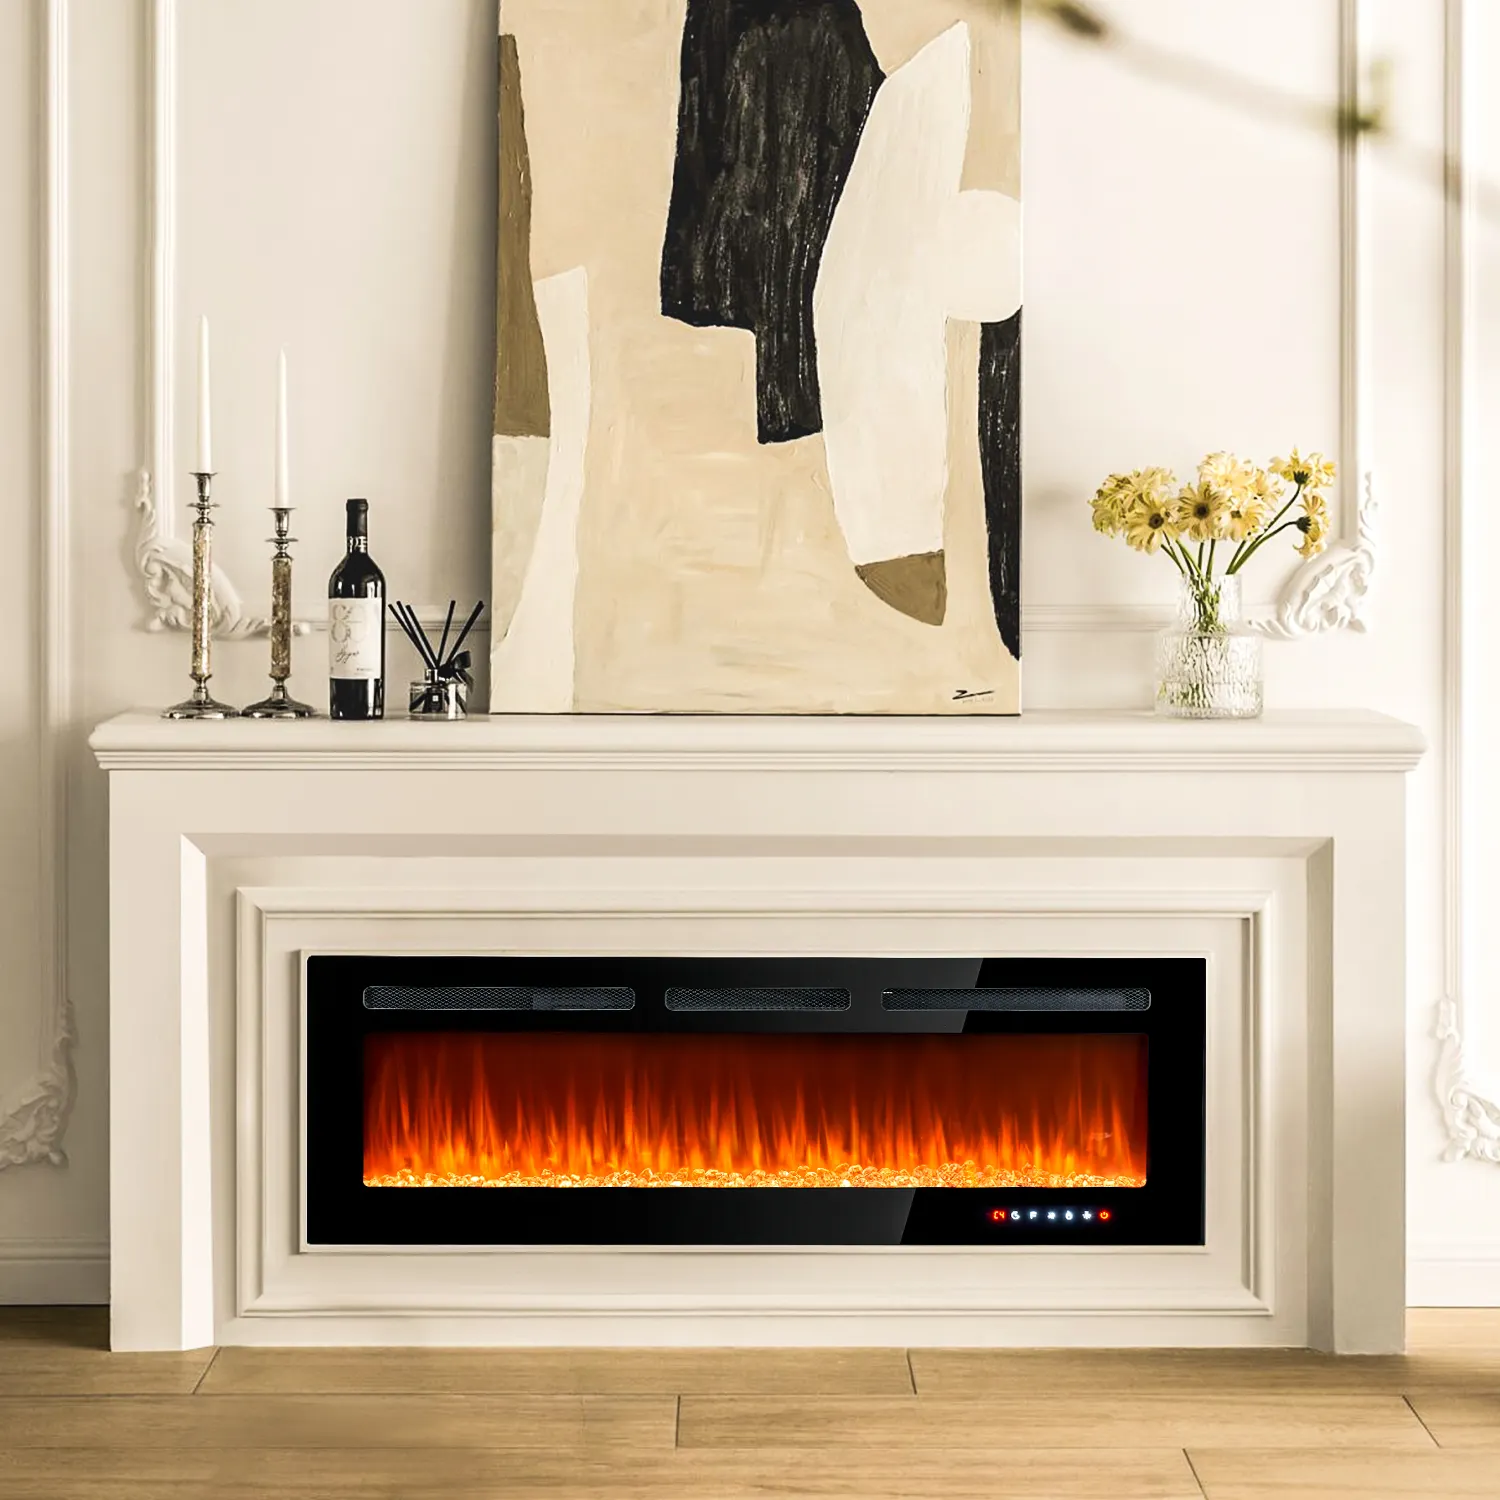 テレビスタンド電気暖炉リアルな炎のリビングルームの装飾